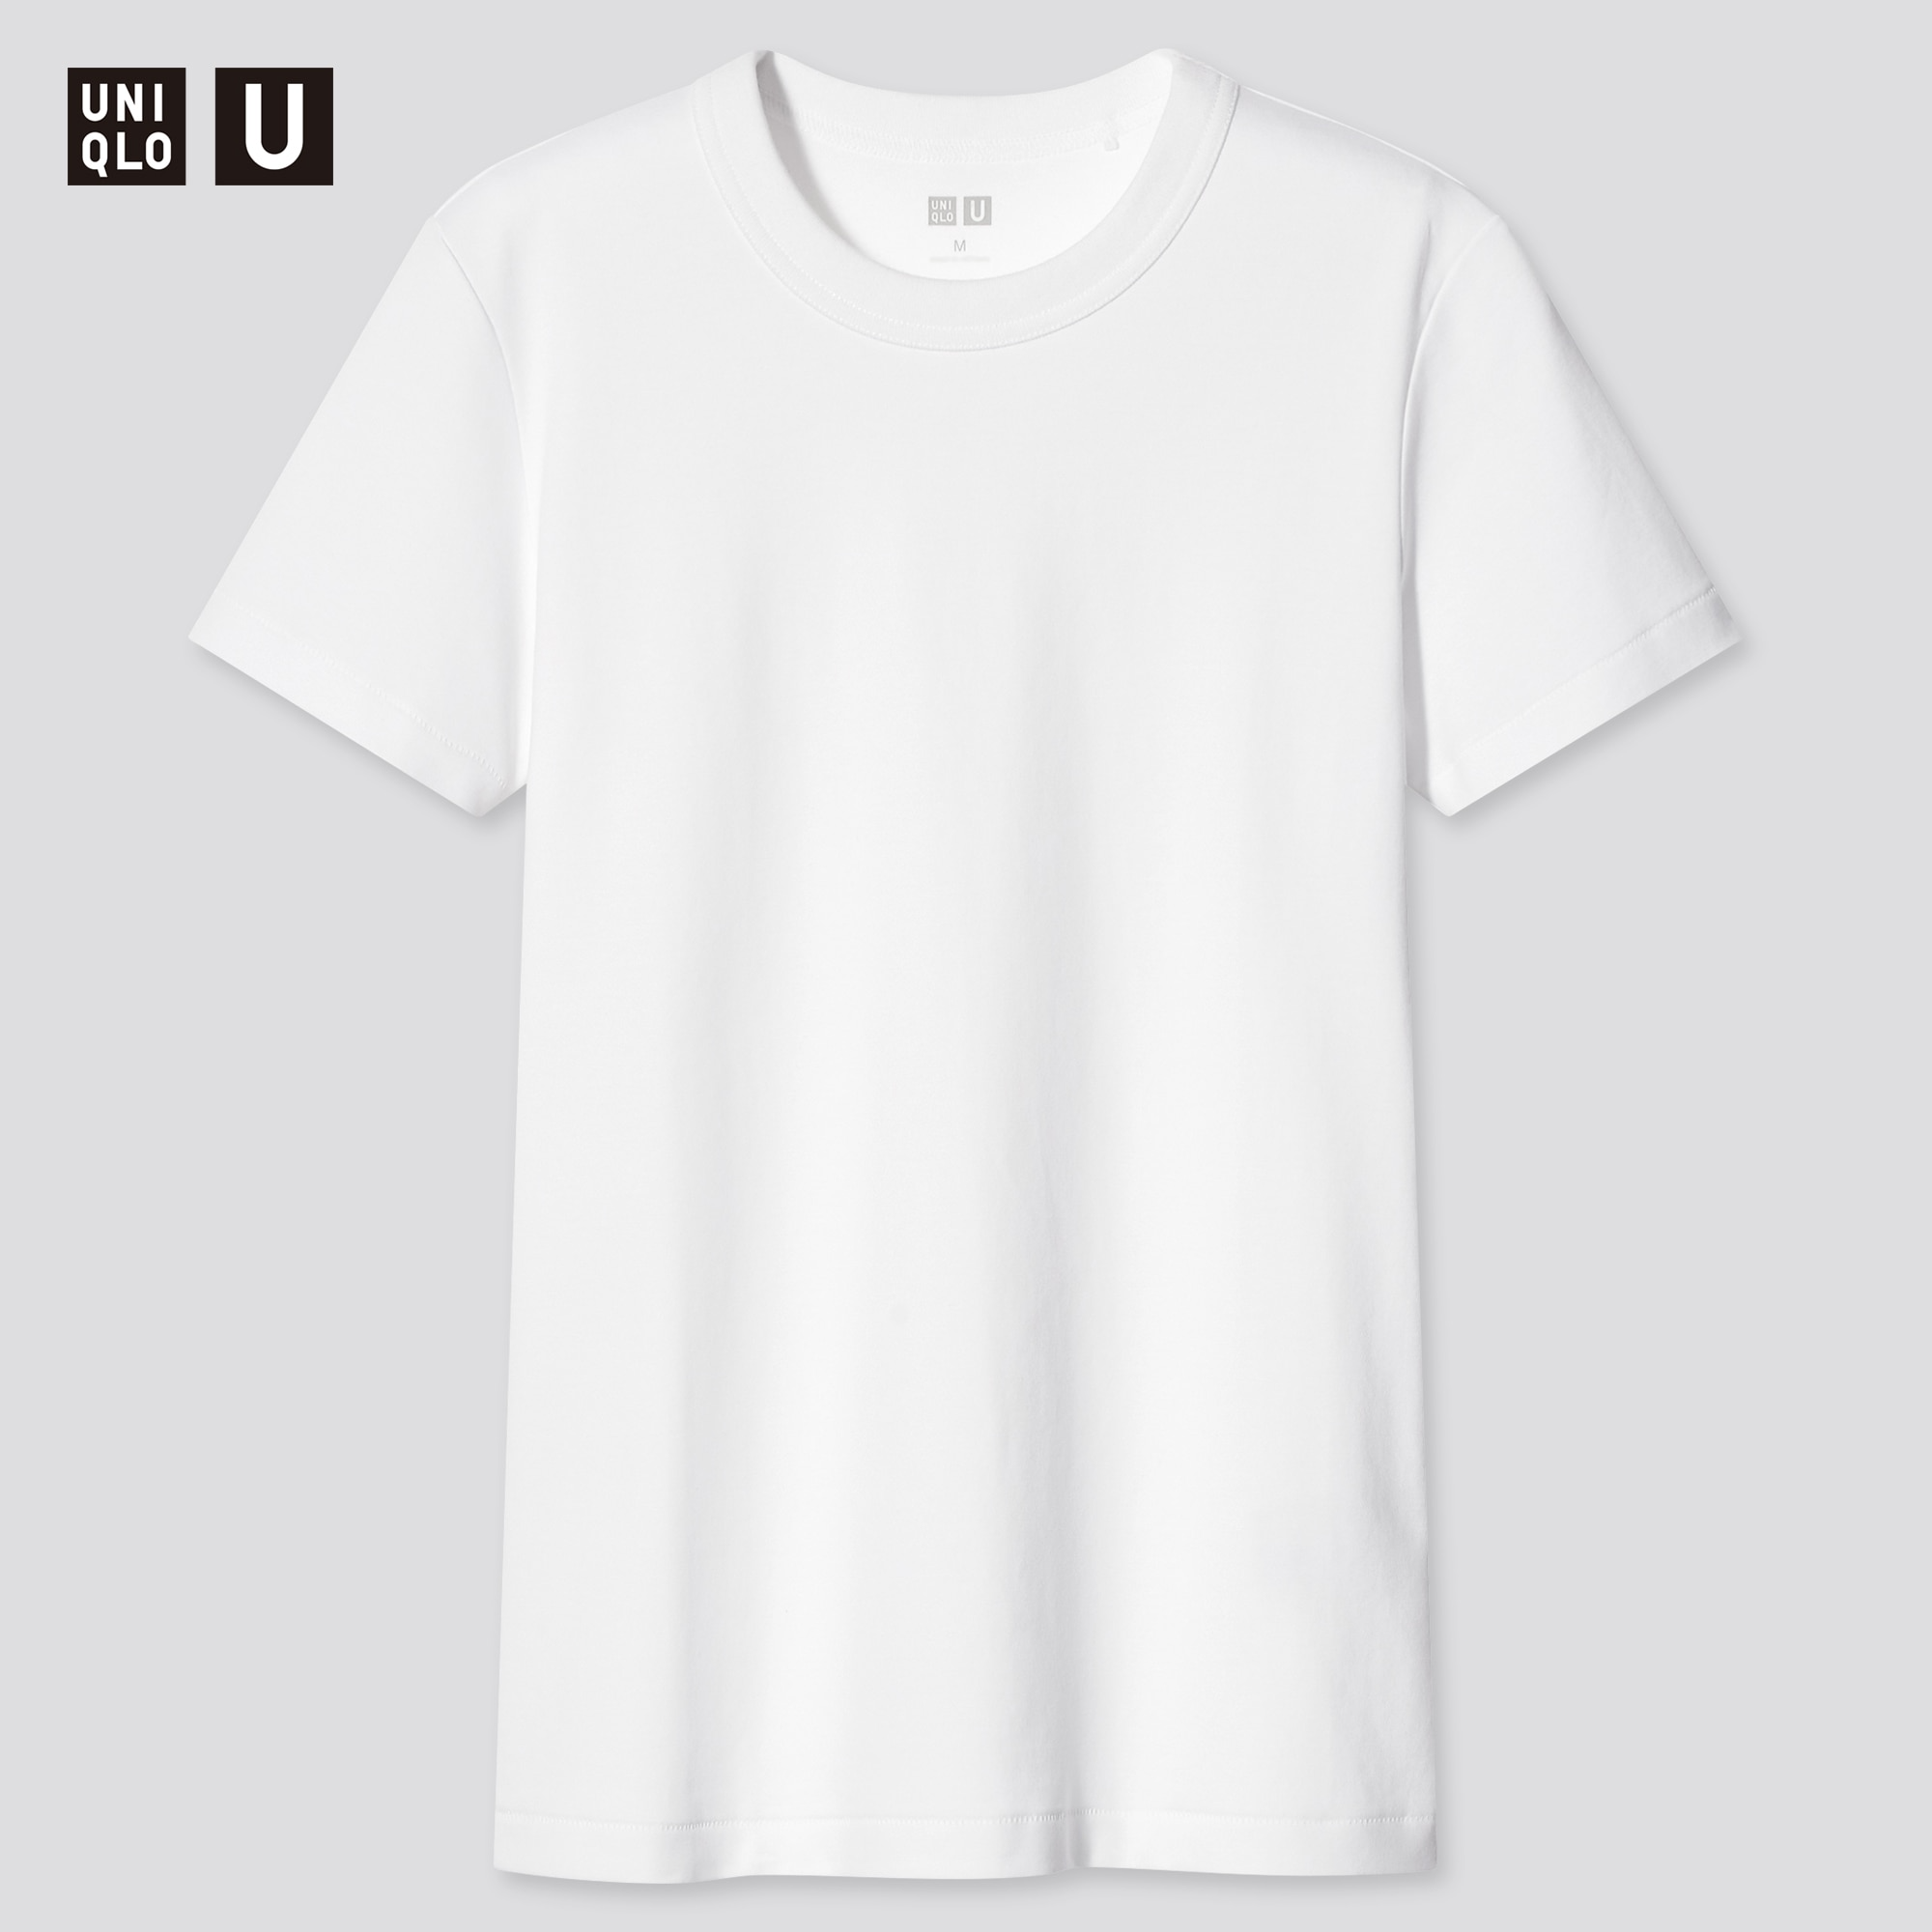 Uniqlo U + Crew Neck Short-Sleeve T-Shirt